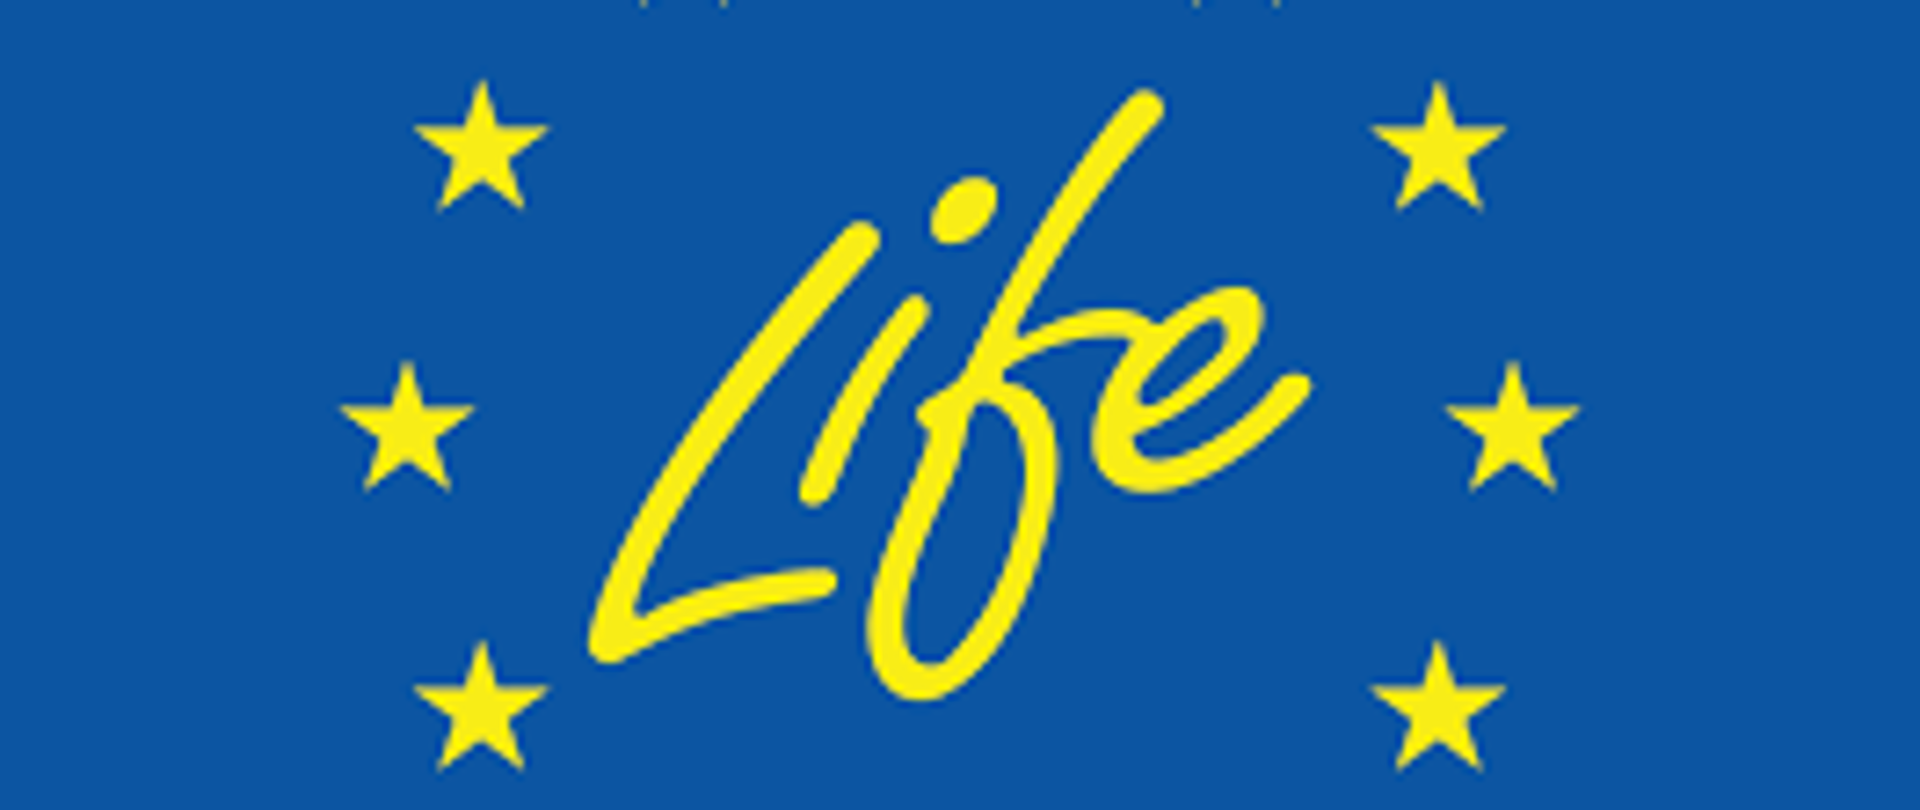 Logo Programu LIFE - 12 żółtych gwiazdek na niebieskim tle ze scentralizowanym napisem LIFE